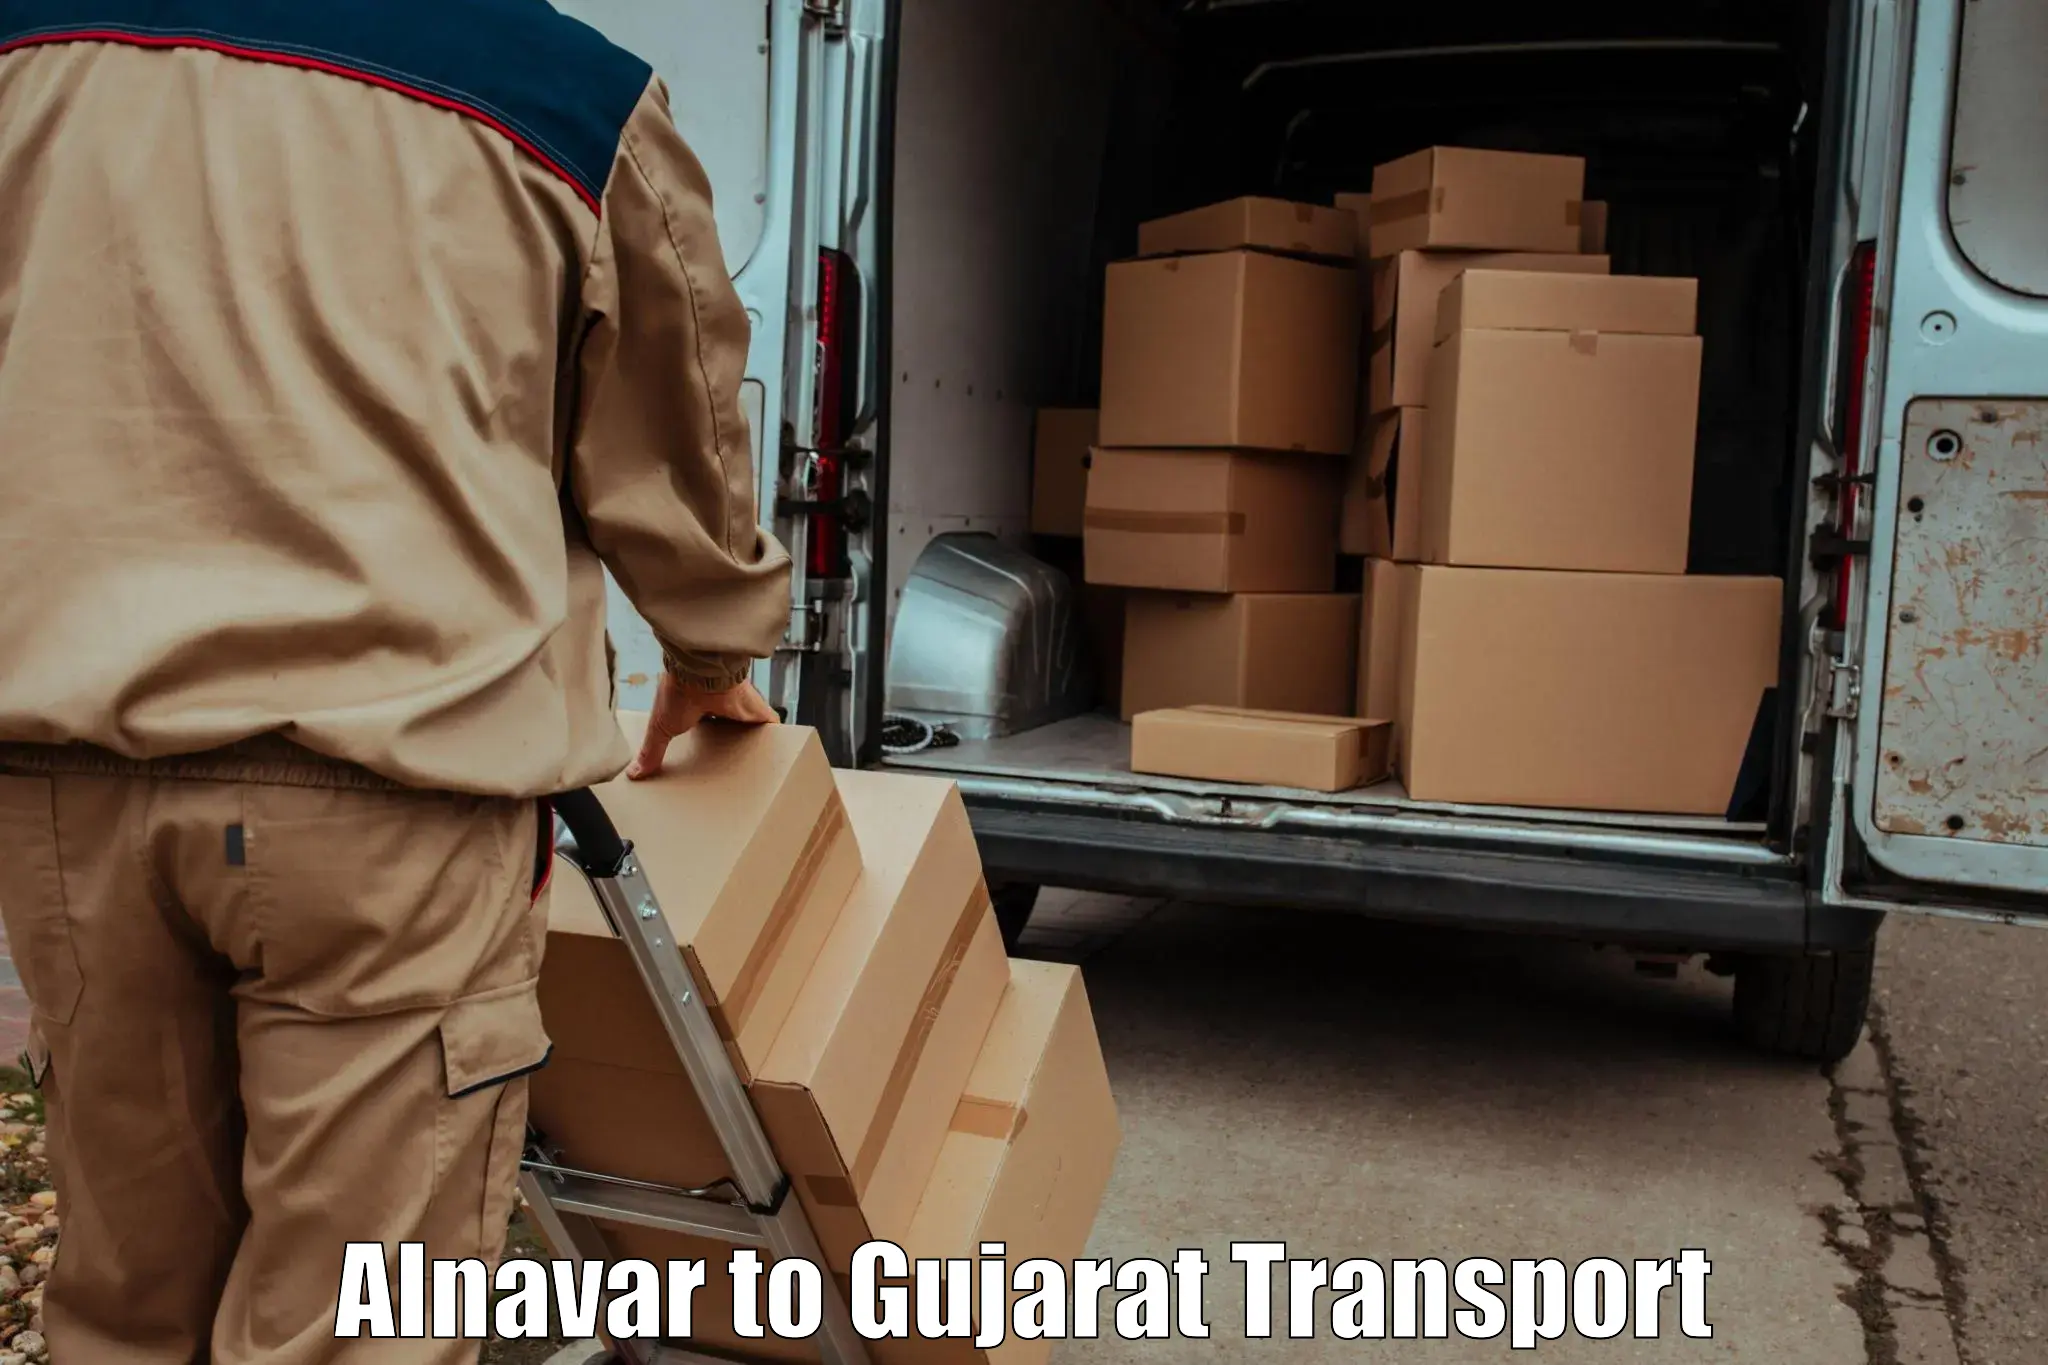 Pick up transport service in Alnavar to Wankaner